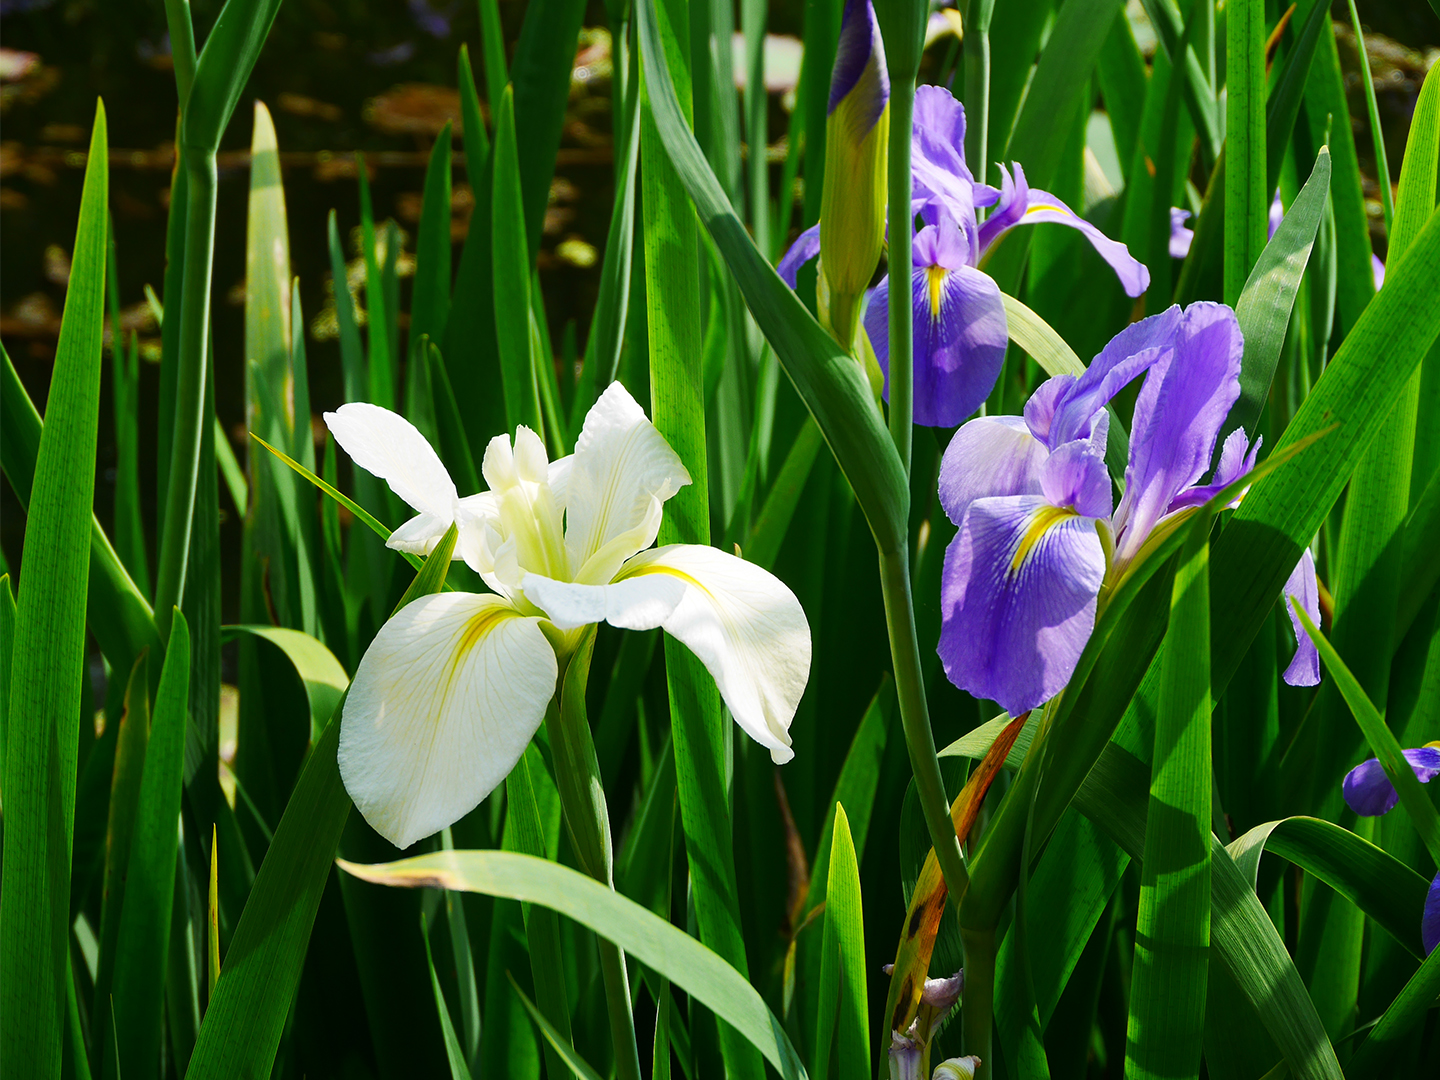 White and purple Iris